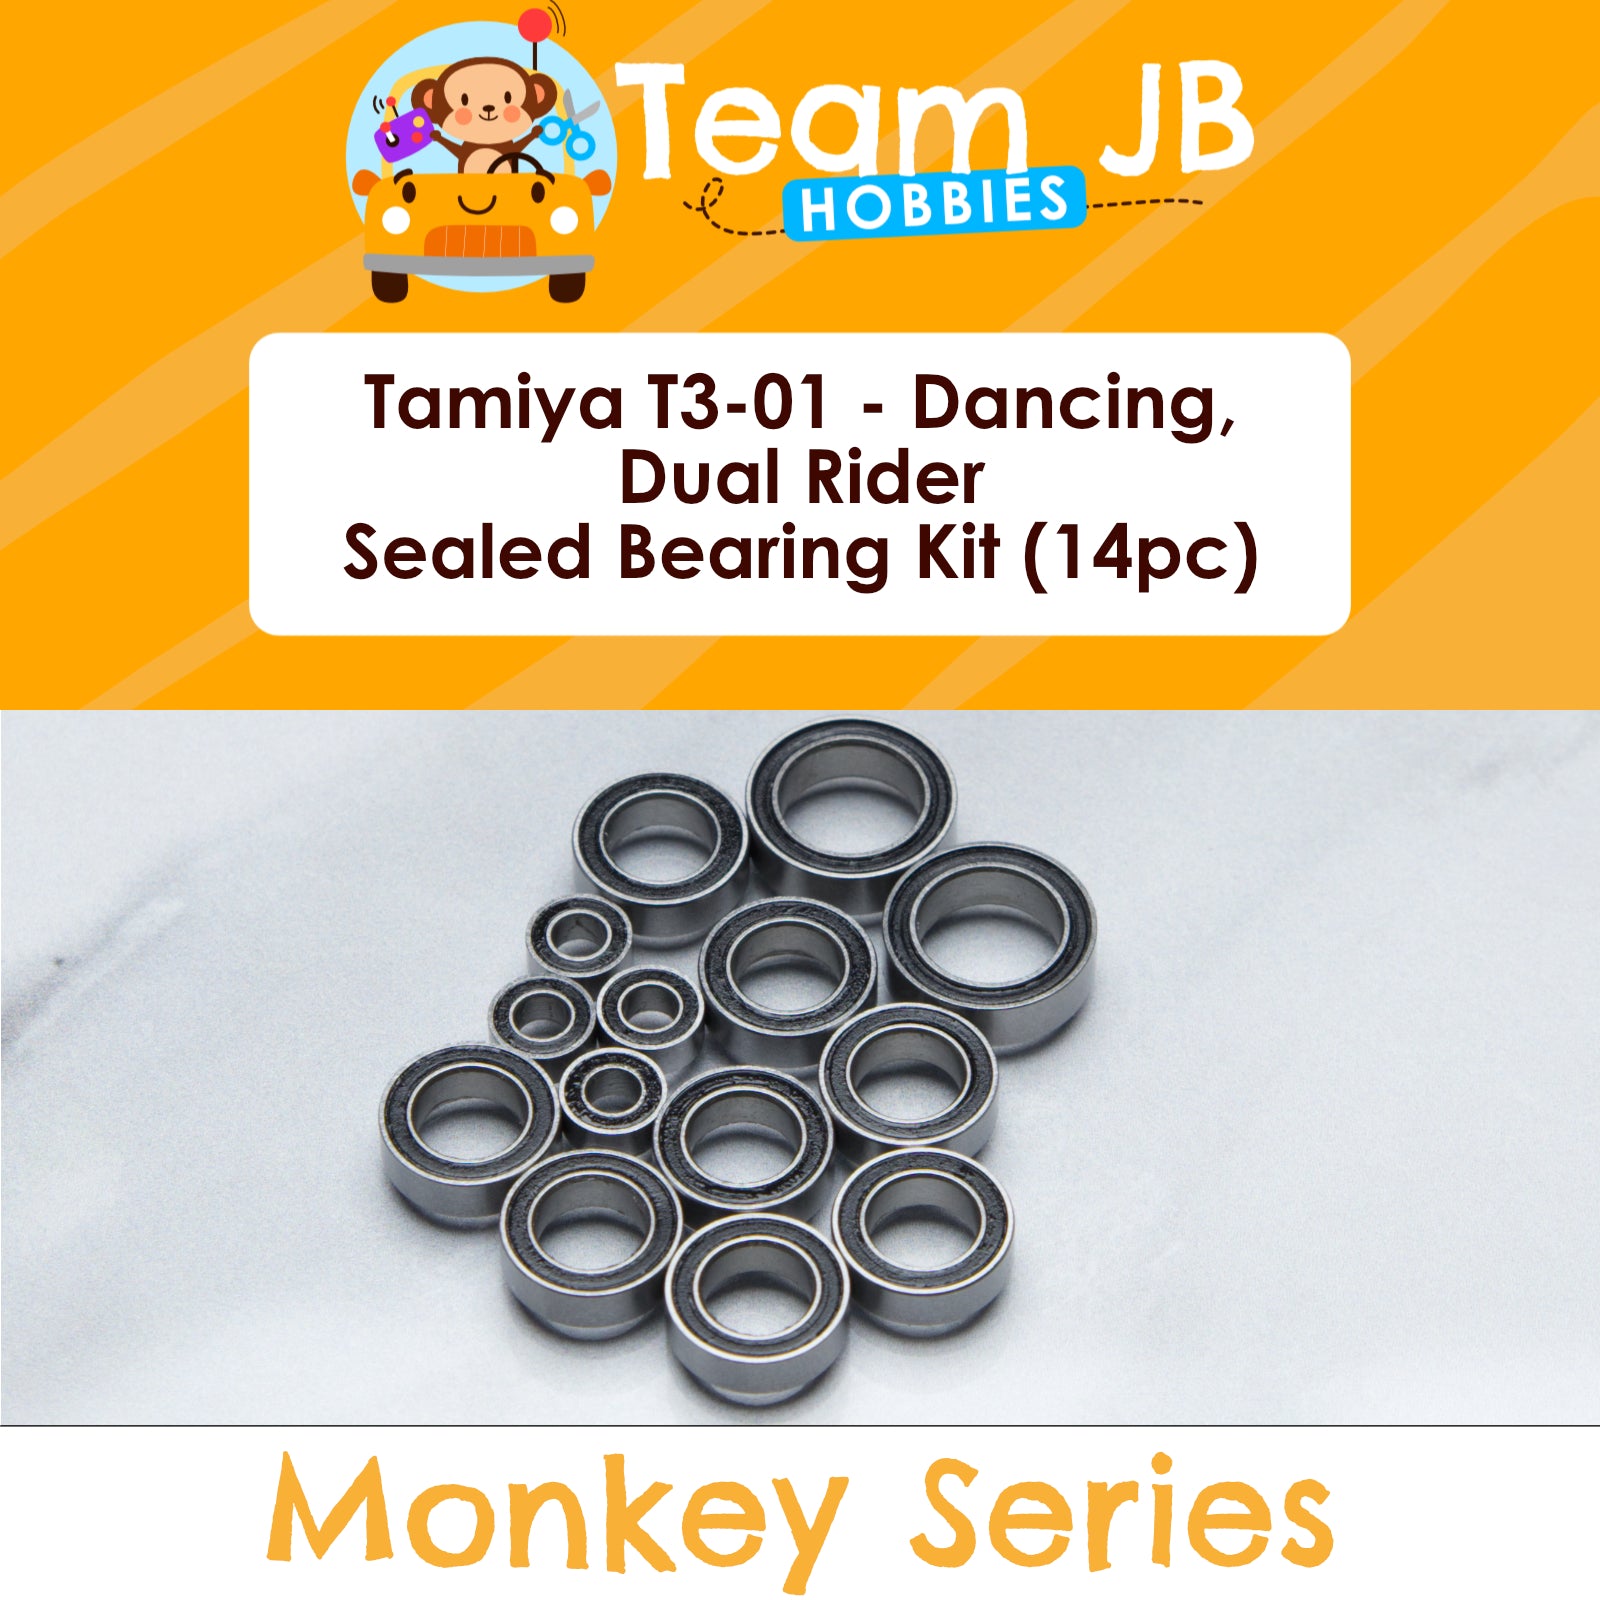 Tamiya T3-01 - Dancing, Dual Rider - Sealed Bearing Kit